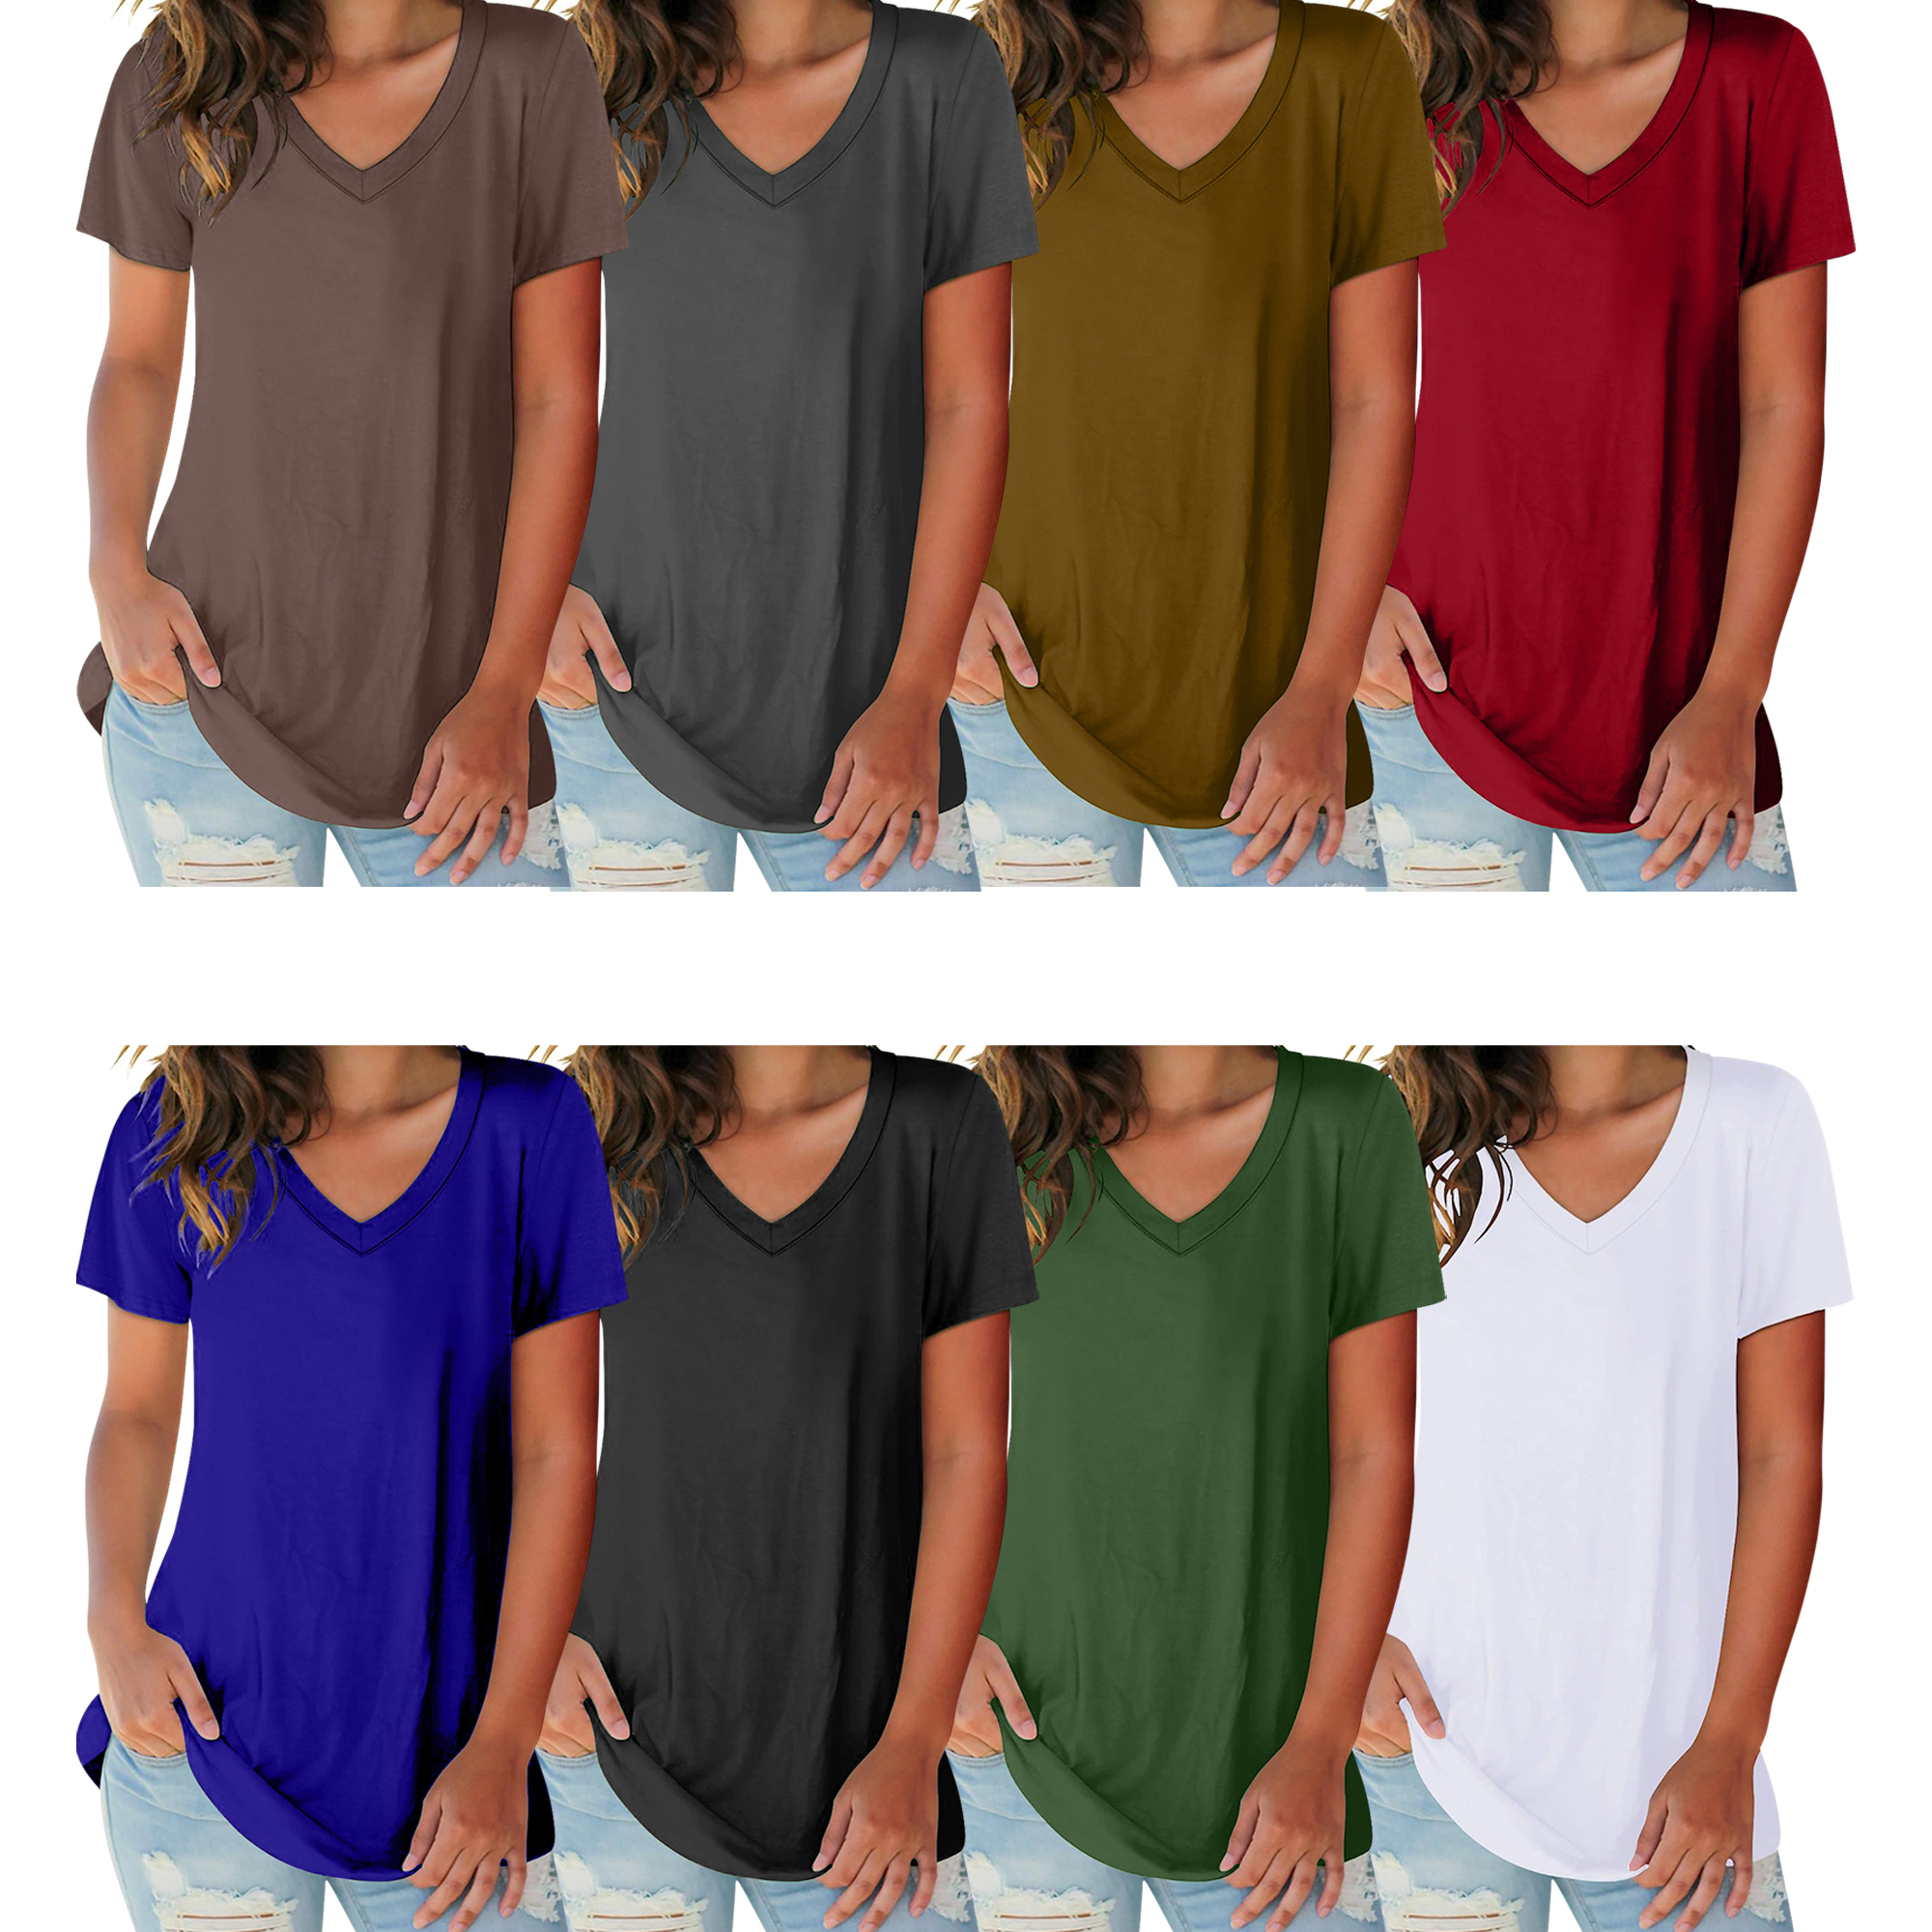 5-Pack: Ladies Ultra Soft Cotton Basic Short Sleeve V-Neck Short Sleeve Summer T-Shirts - Large